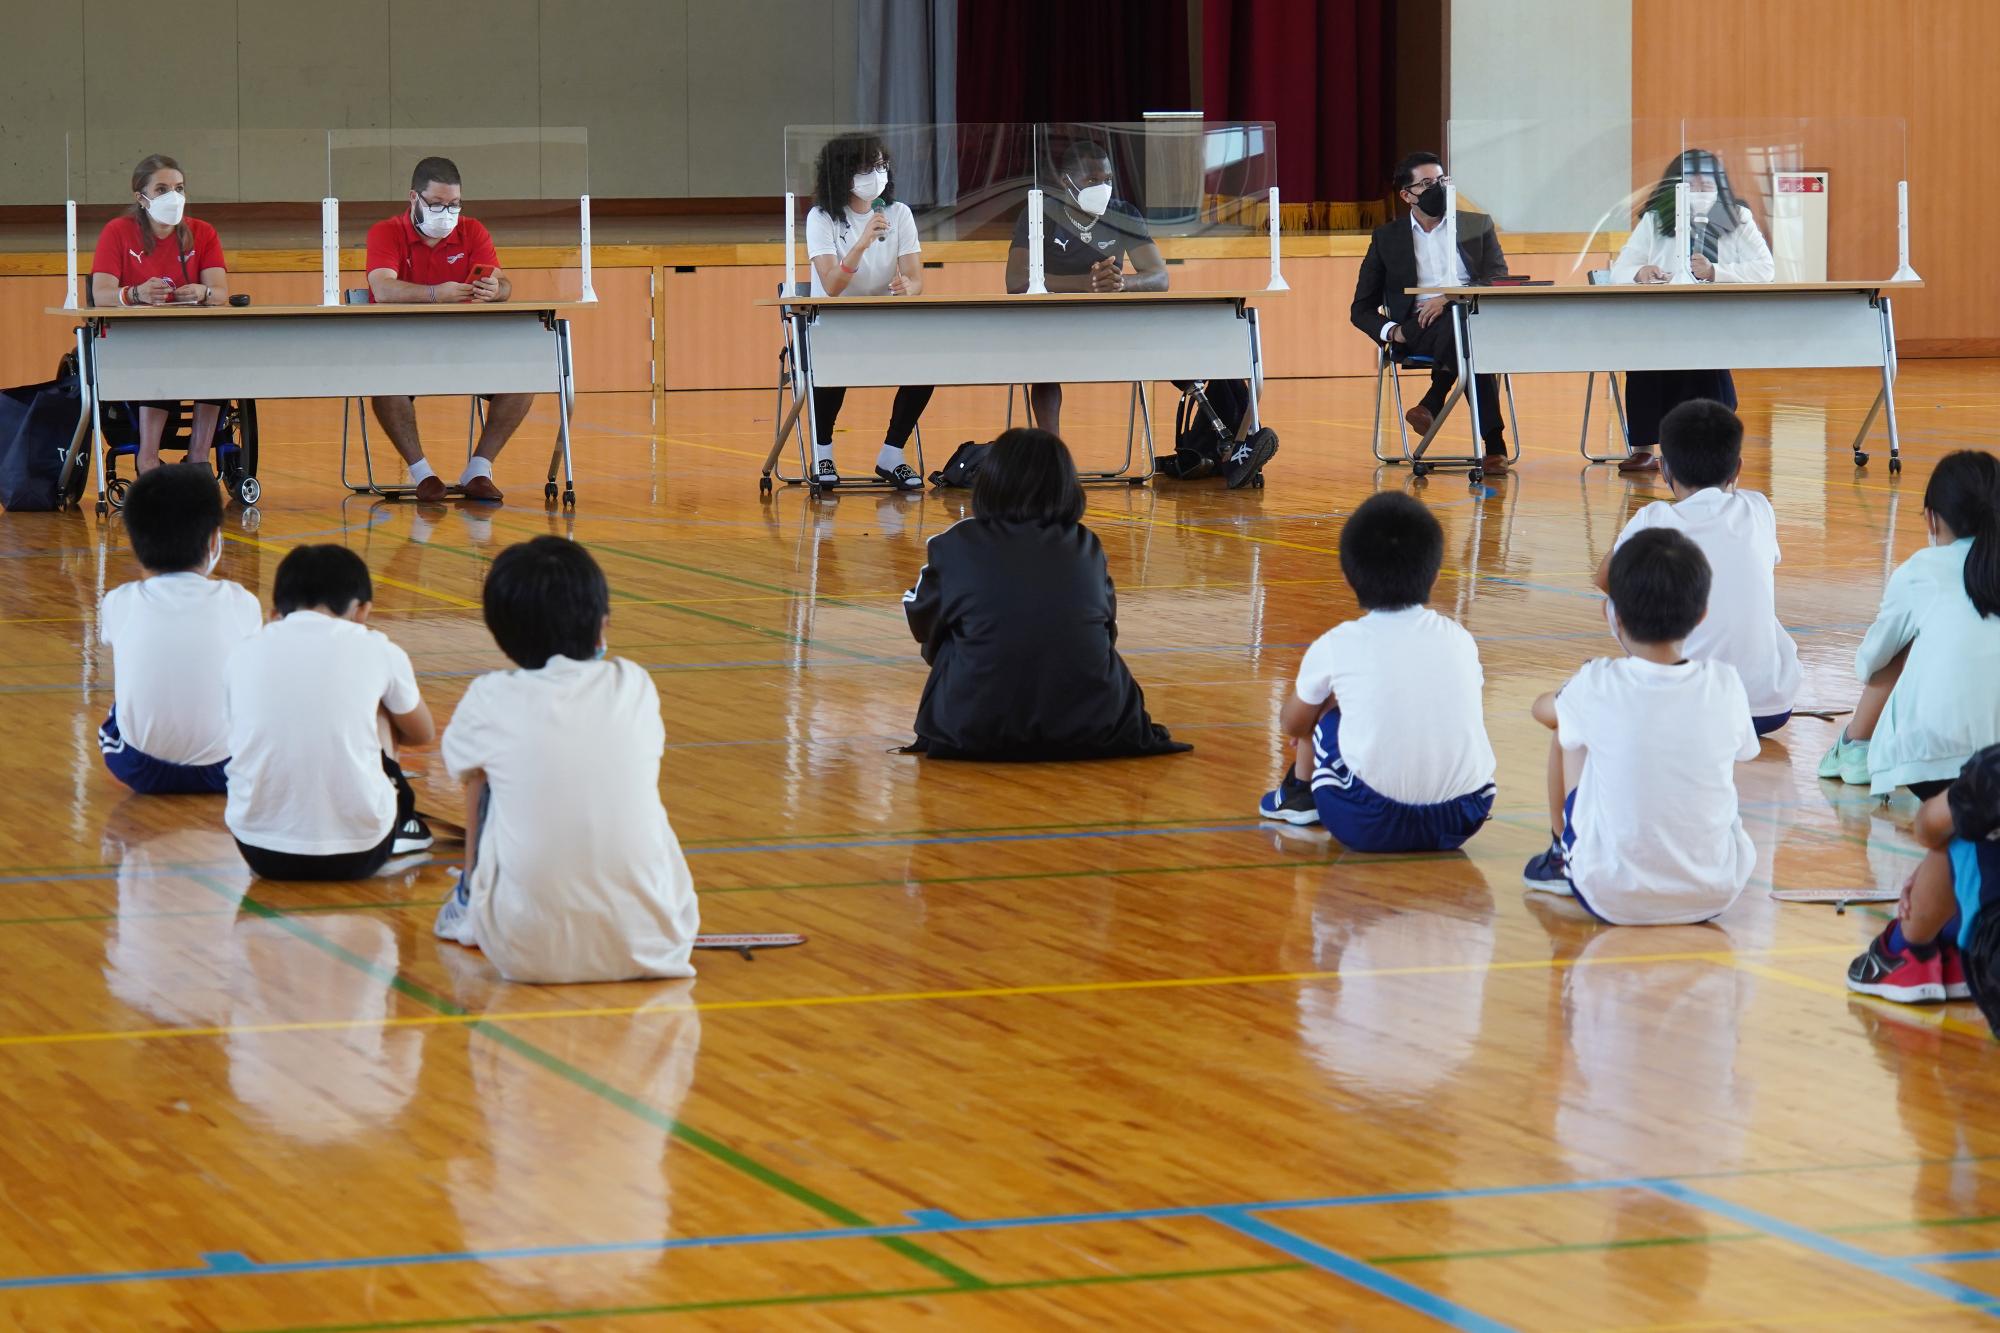 中央小学校でパラリンピック選手団が講演